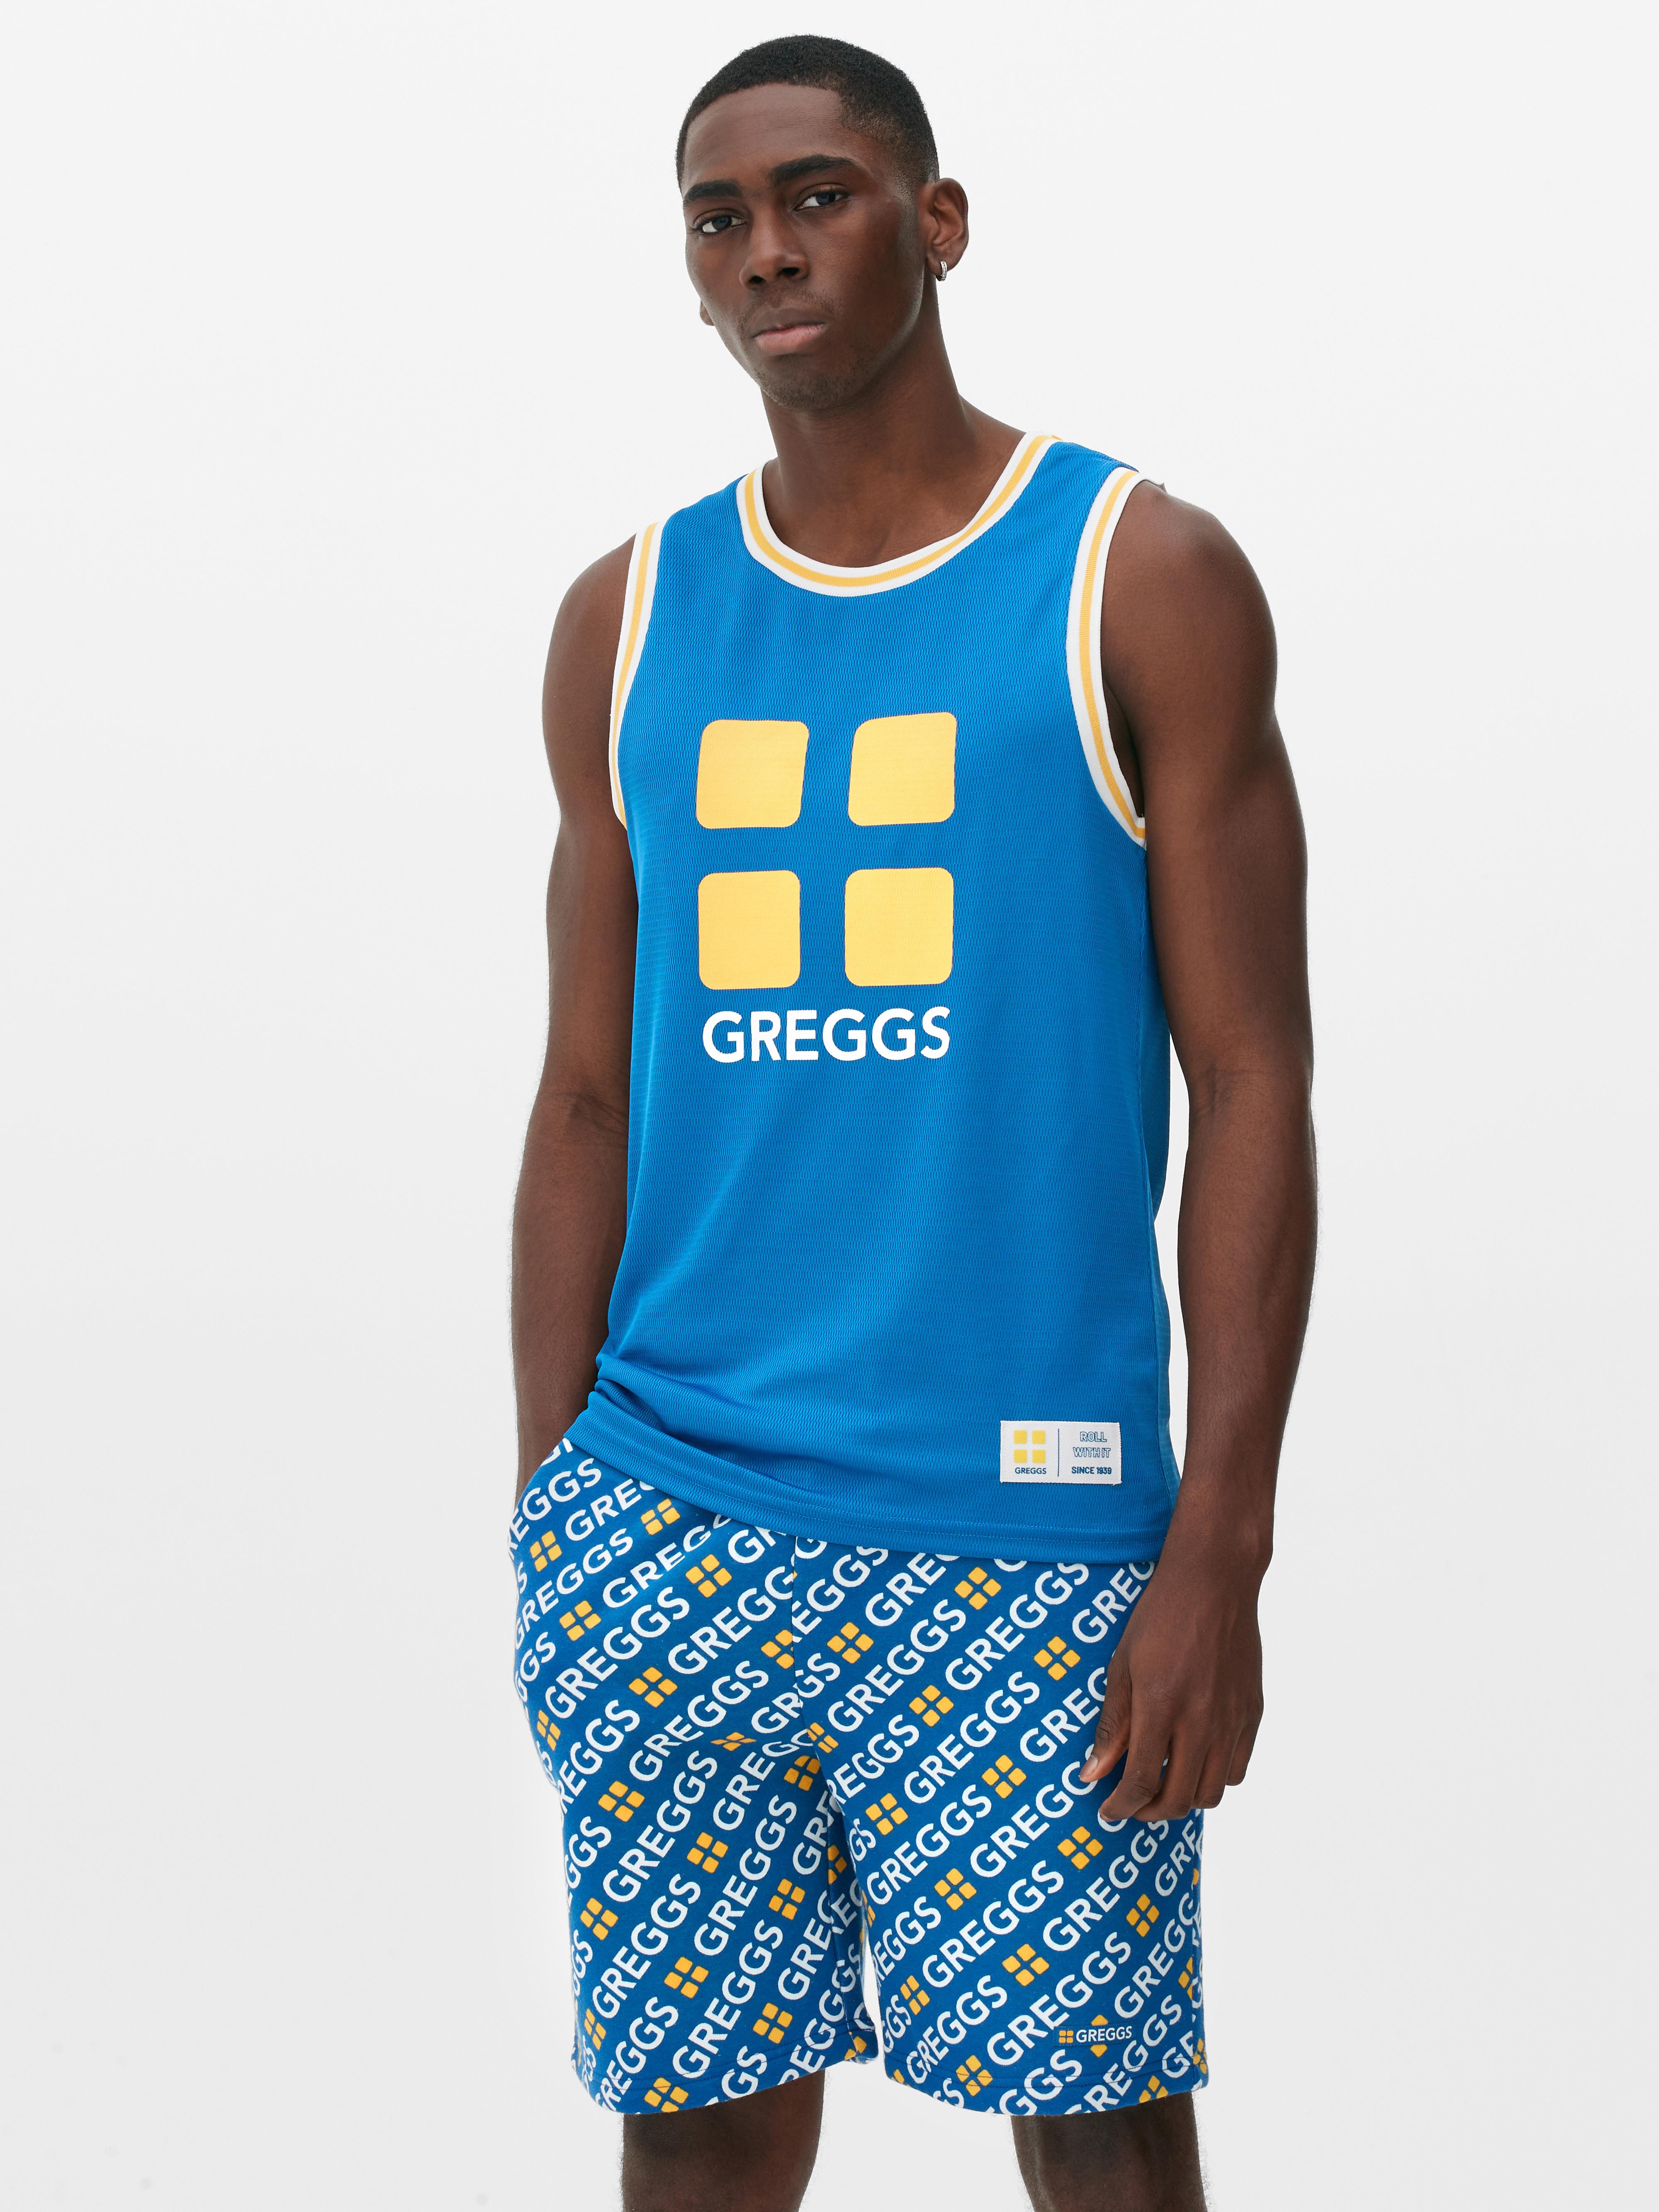 Greggs Basketball Vest